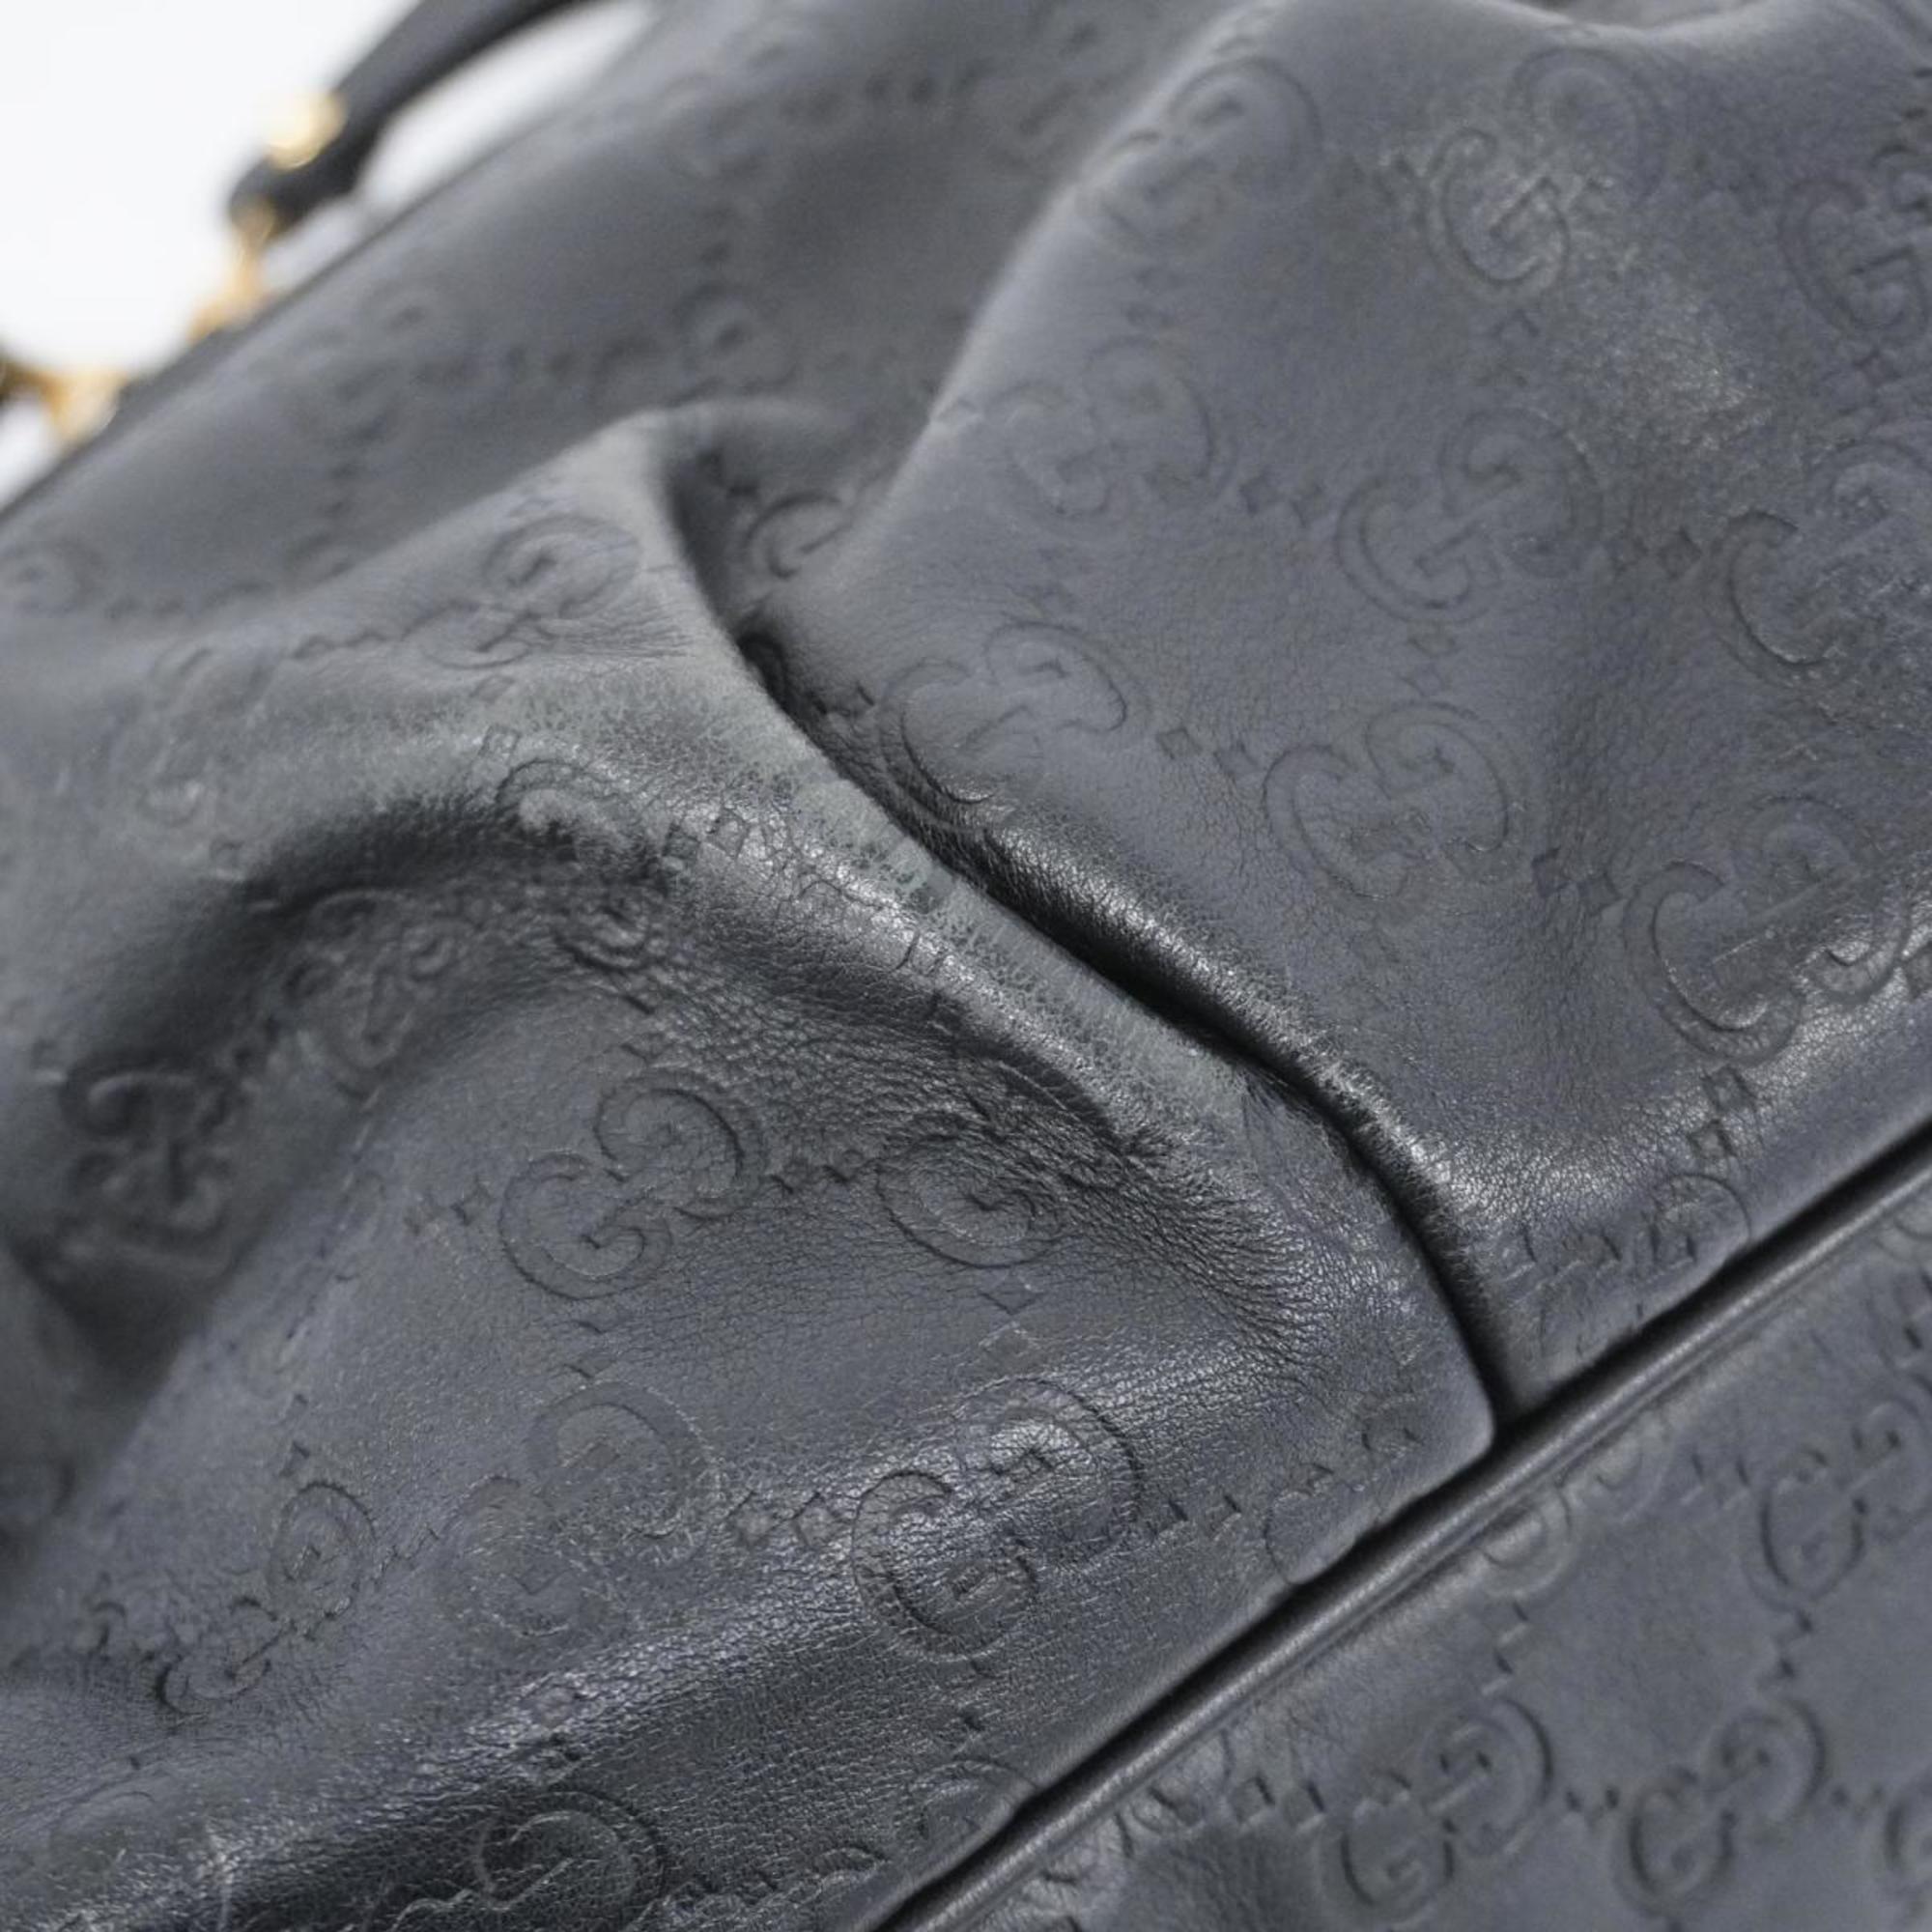 Gucci Handbag Guccissima 247902 Leather Black Women's